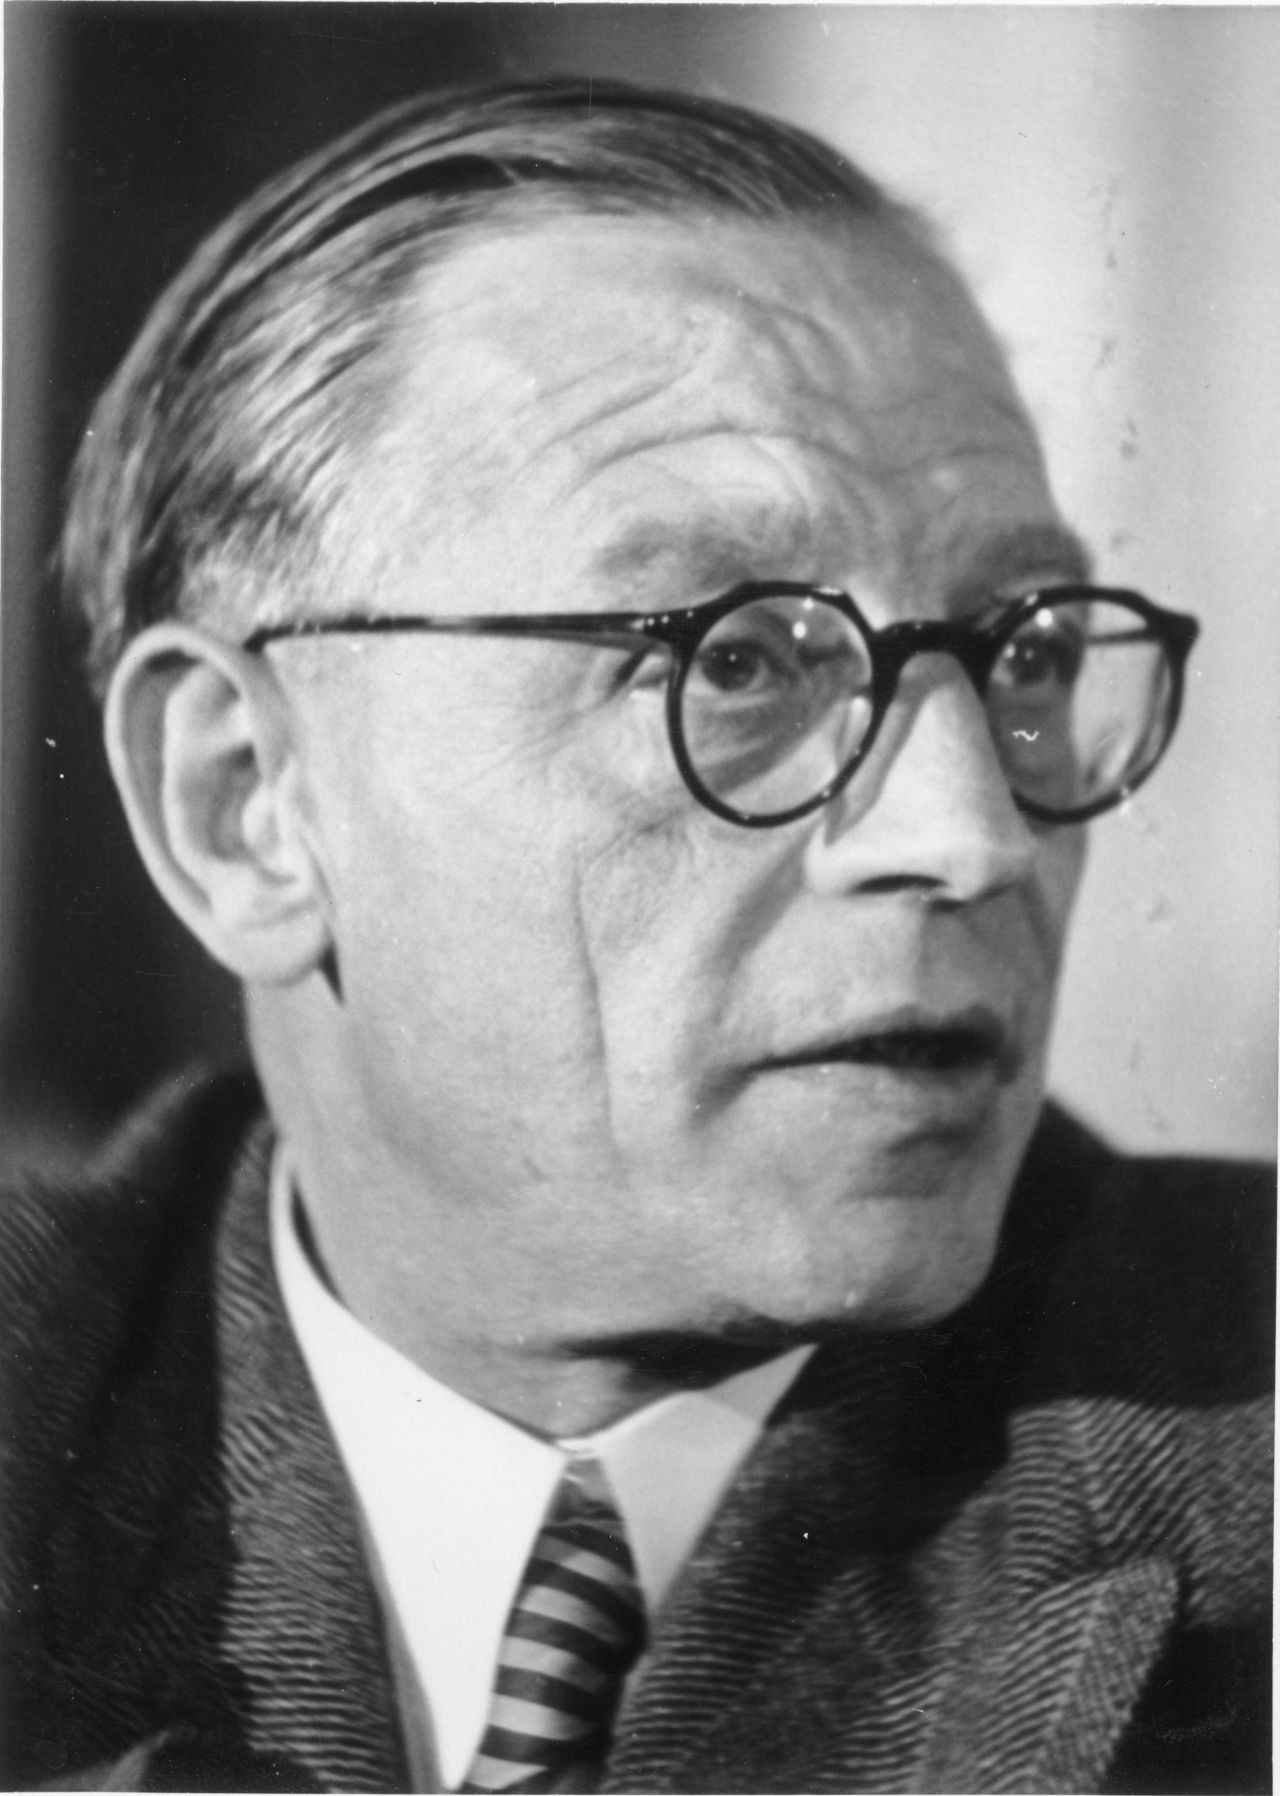 Porträtfotografie des DDR-Politikers Georg Dertinger, Oktober 1949.